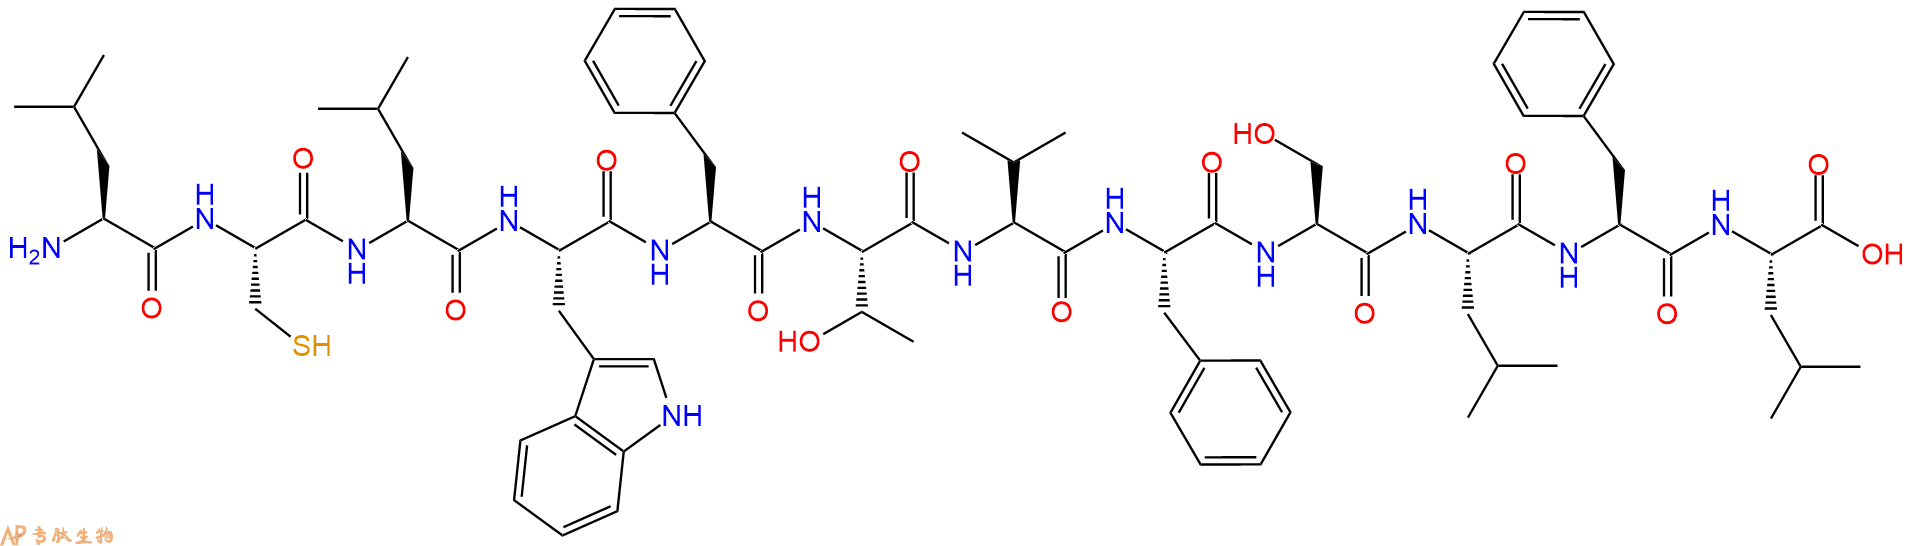 专肽生物产品H2N-Leu-Cys-Leu-Trp-Phe-Thr-Val-Phe-Ser-Leu-Phe-Le